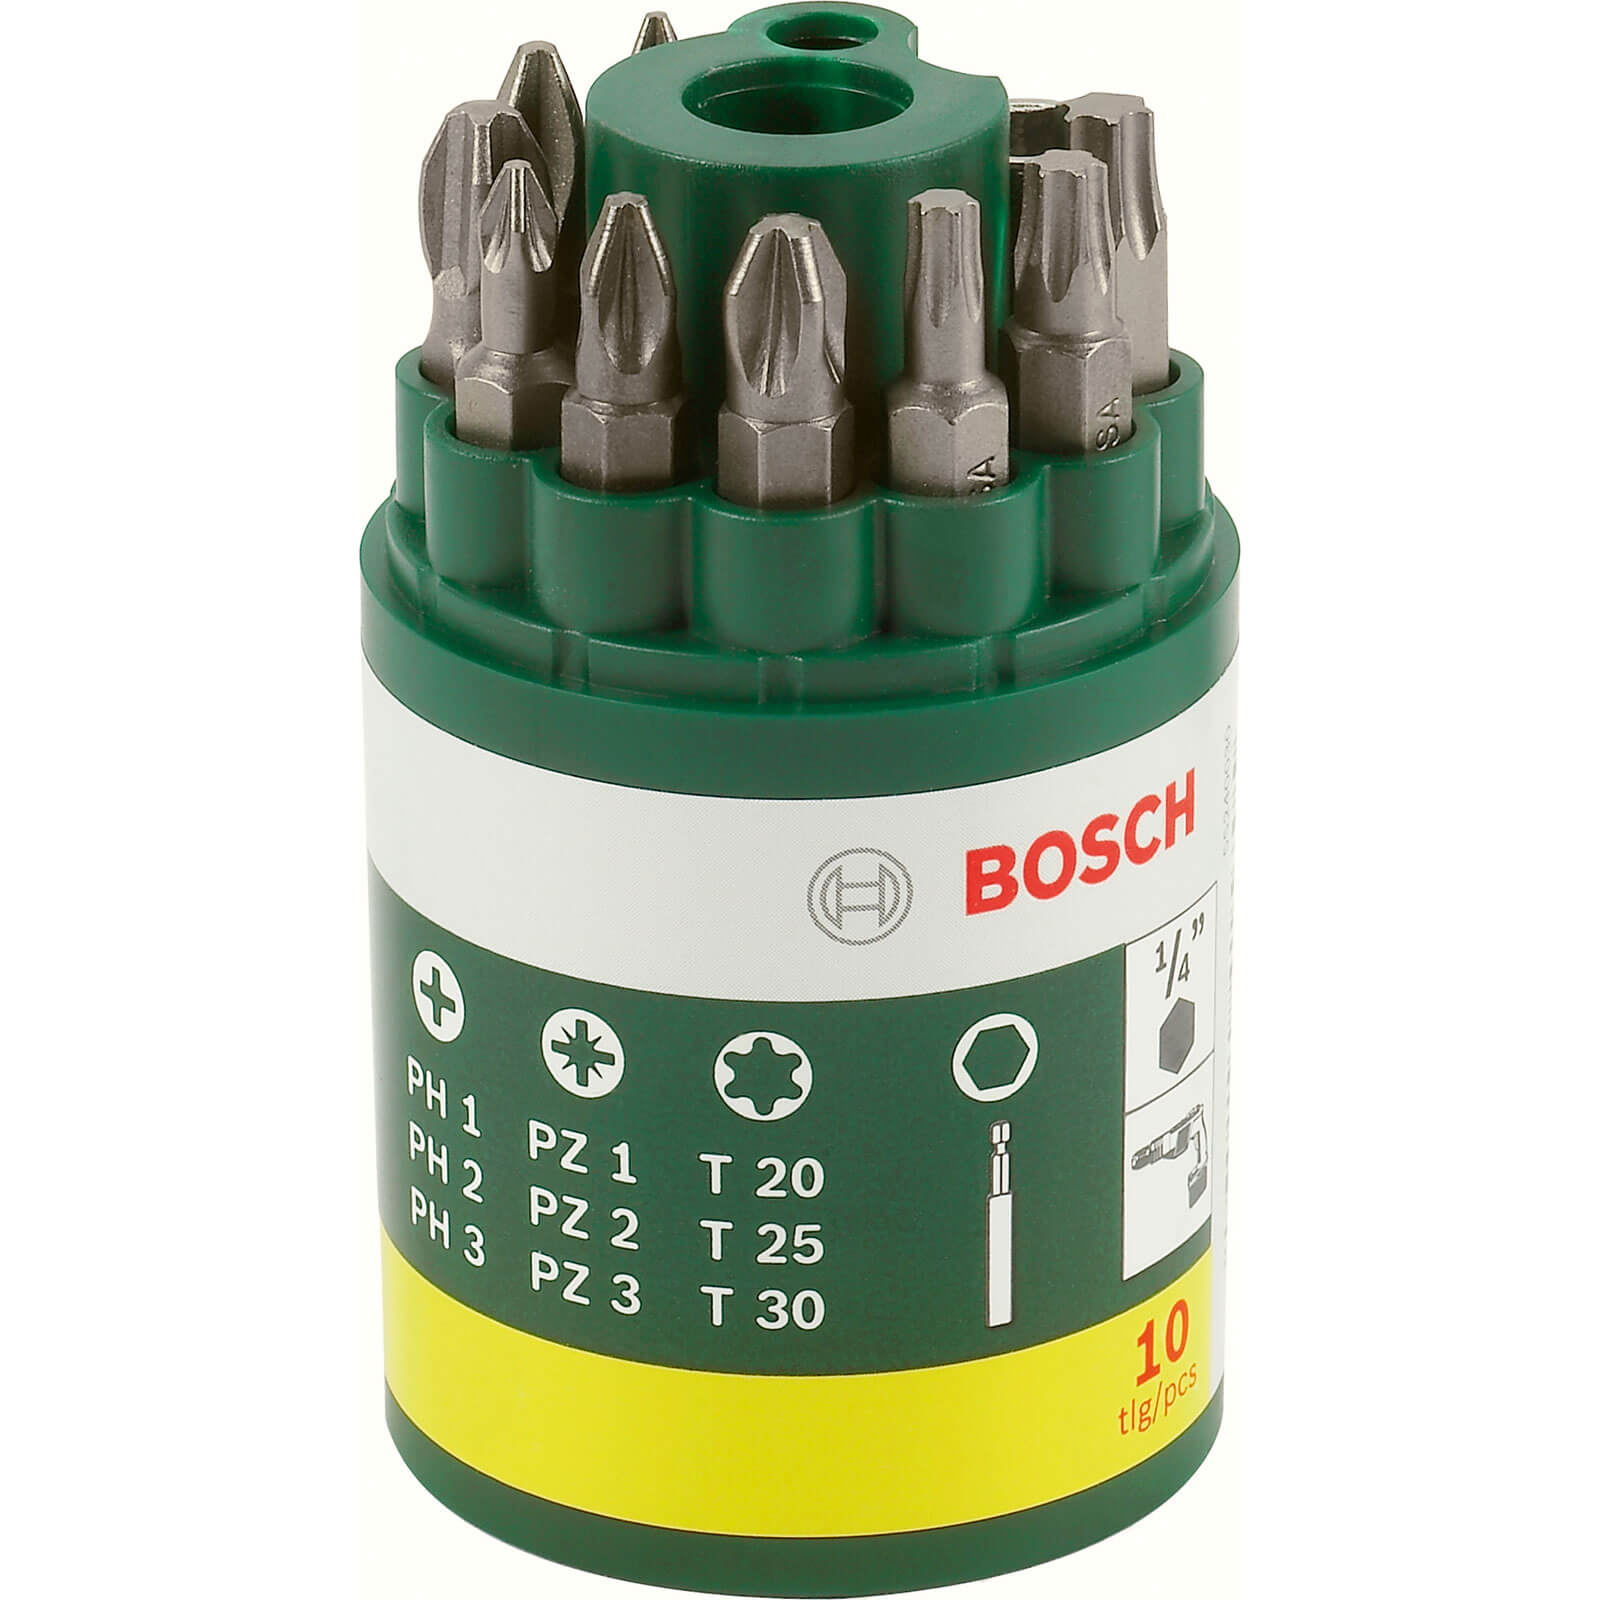 Image of Bosch 10 Piece Mixed Screwdriver Bit Set